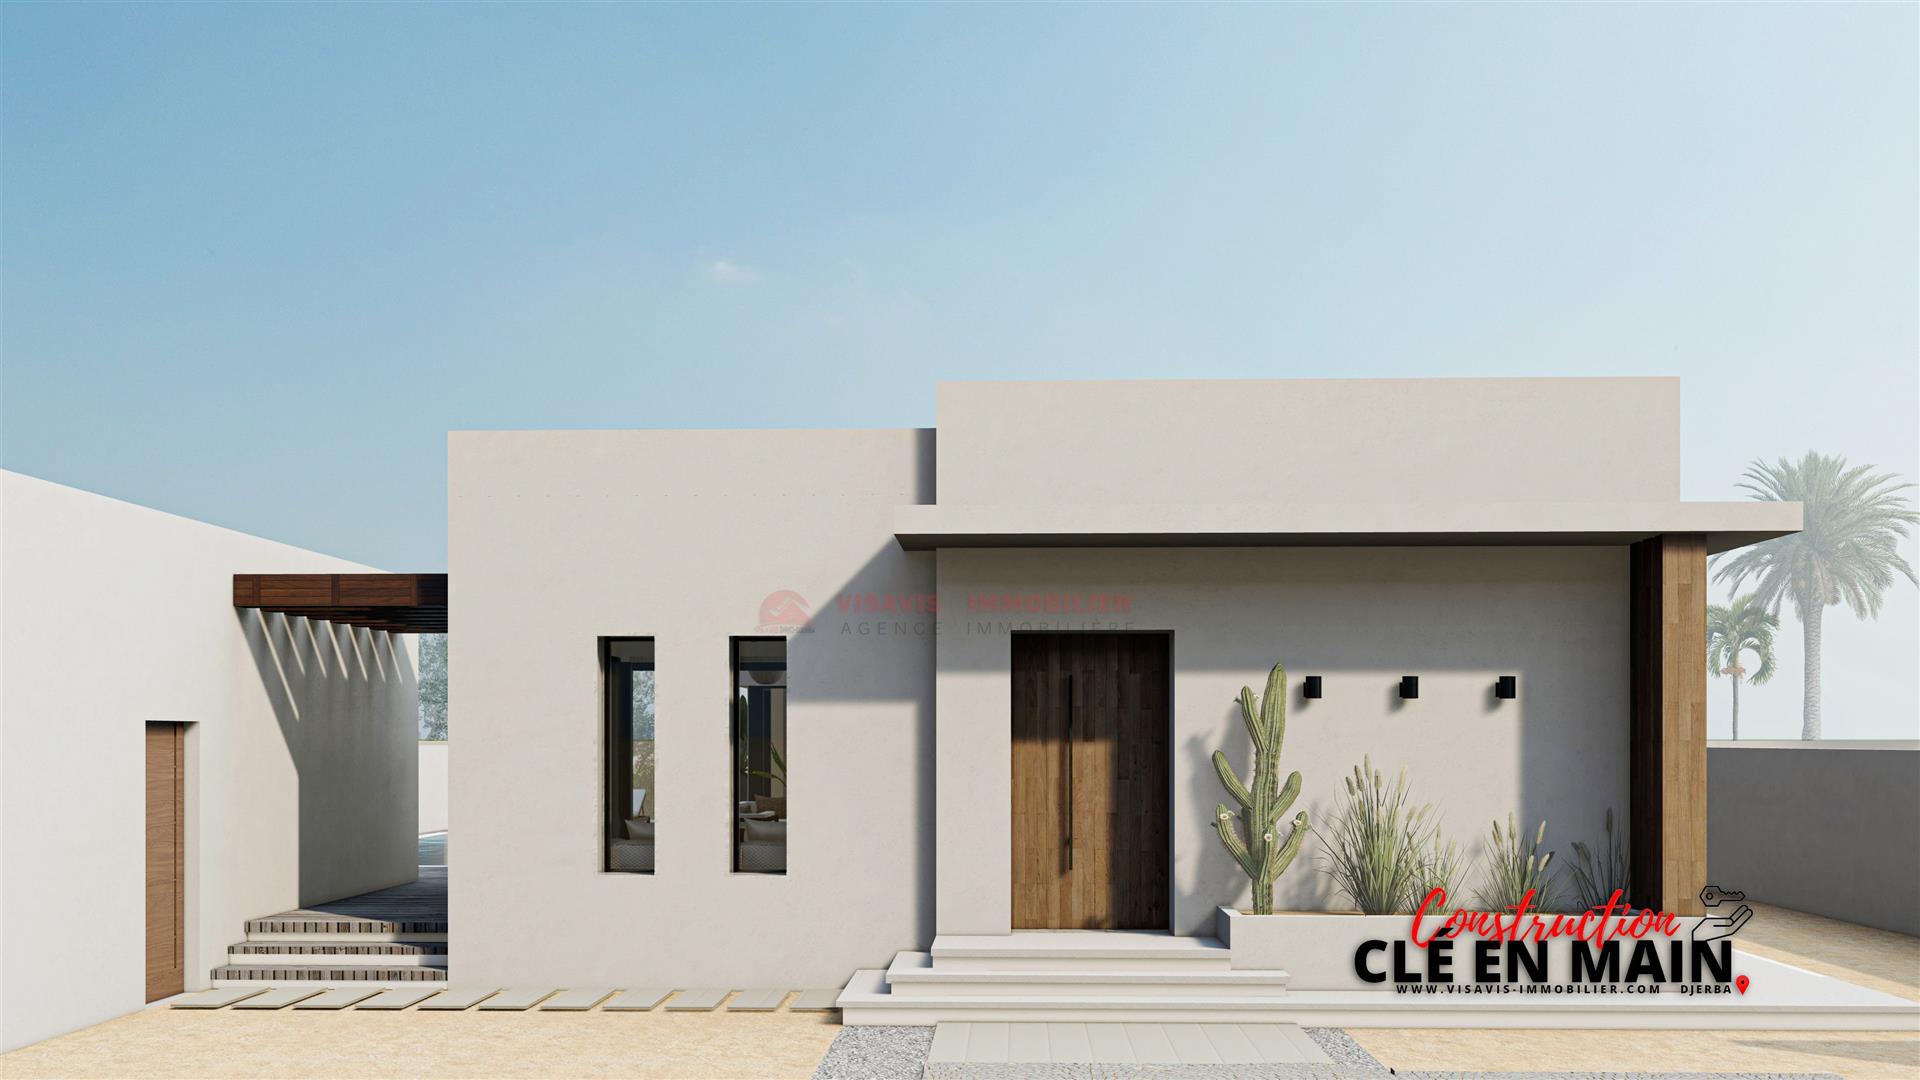 Nueva propiedad inmobiliaria en Djerba Túnez - Área urbana - título azul